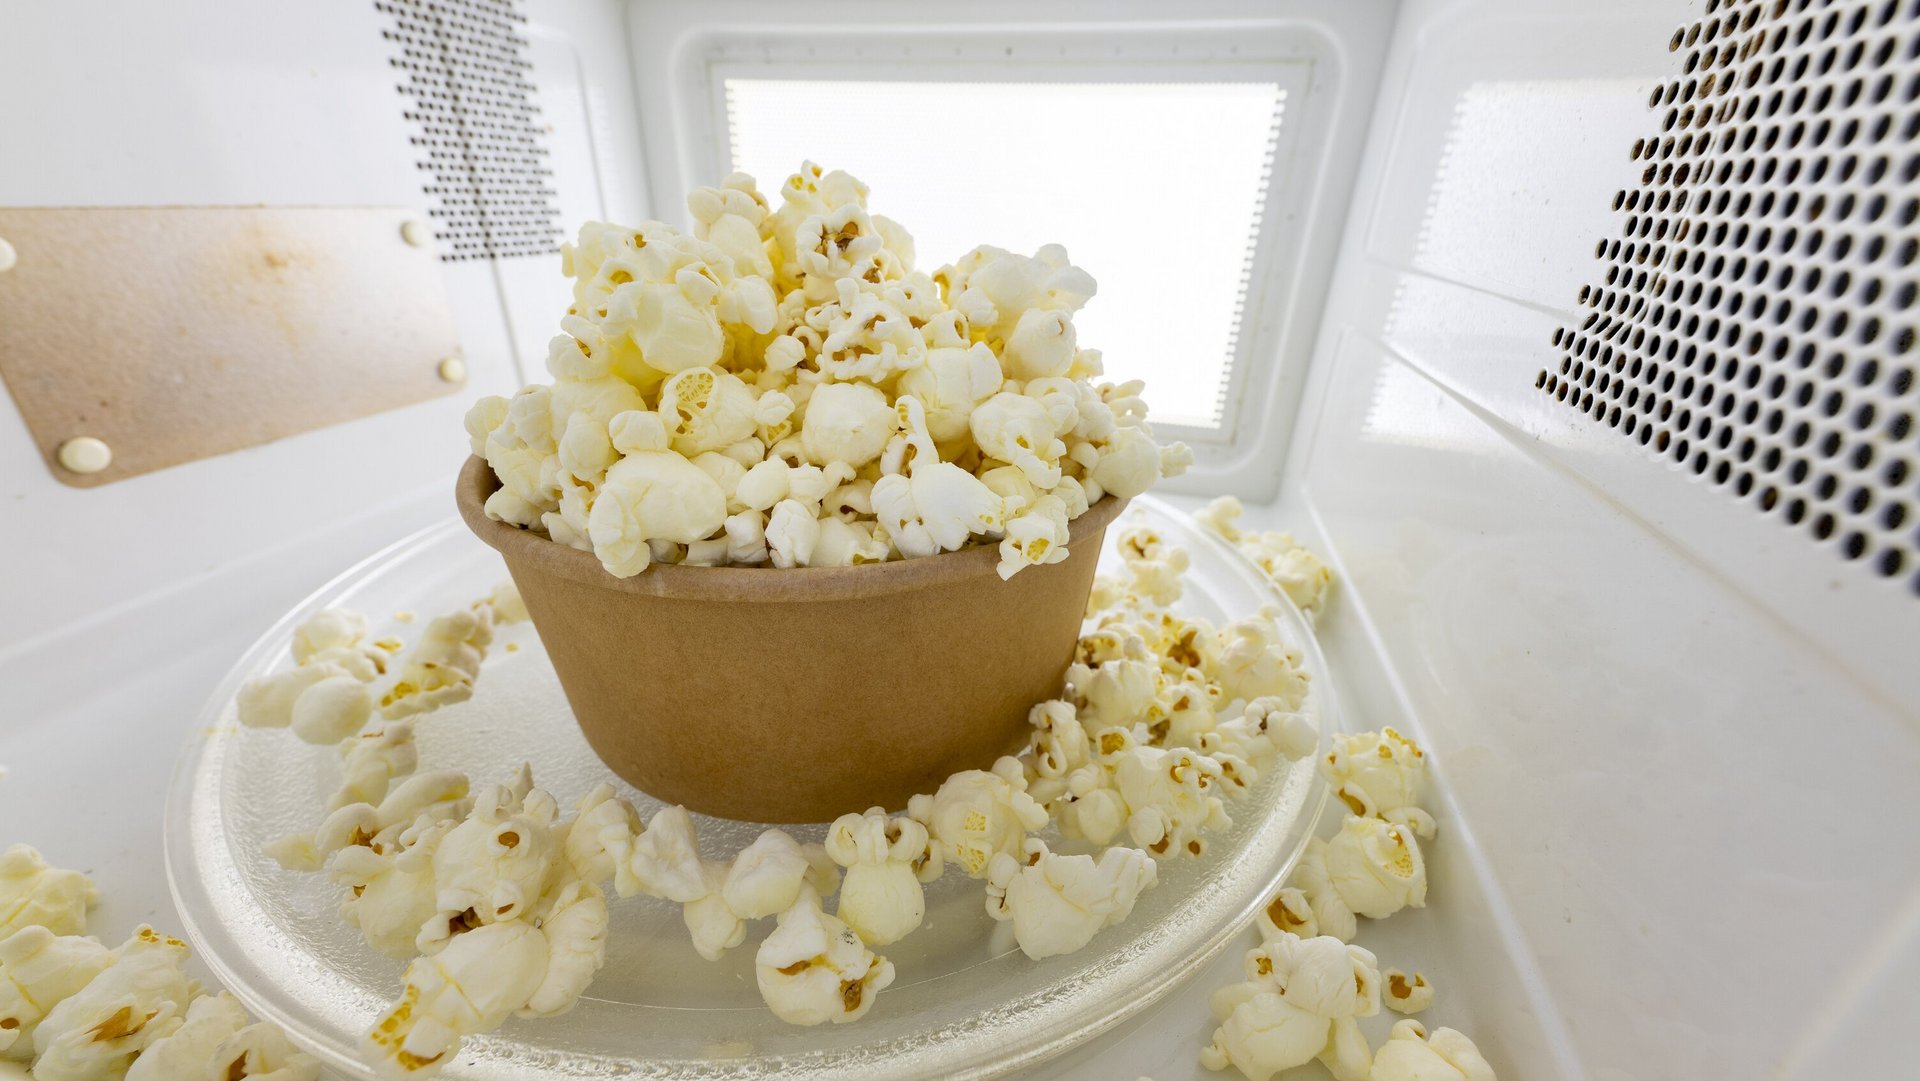 Schale mit Popcorn in einem Mikrowellenofen